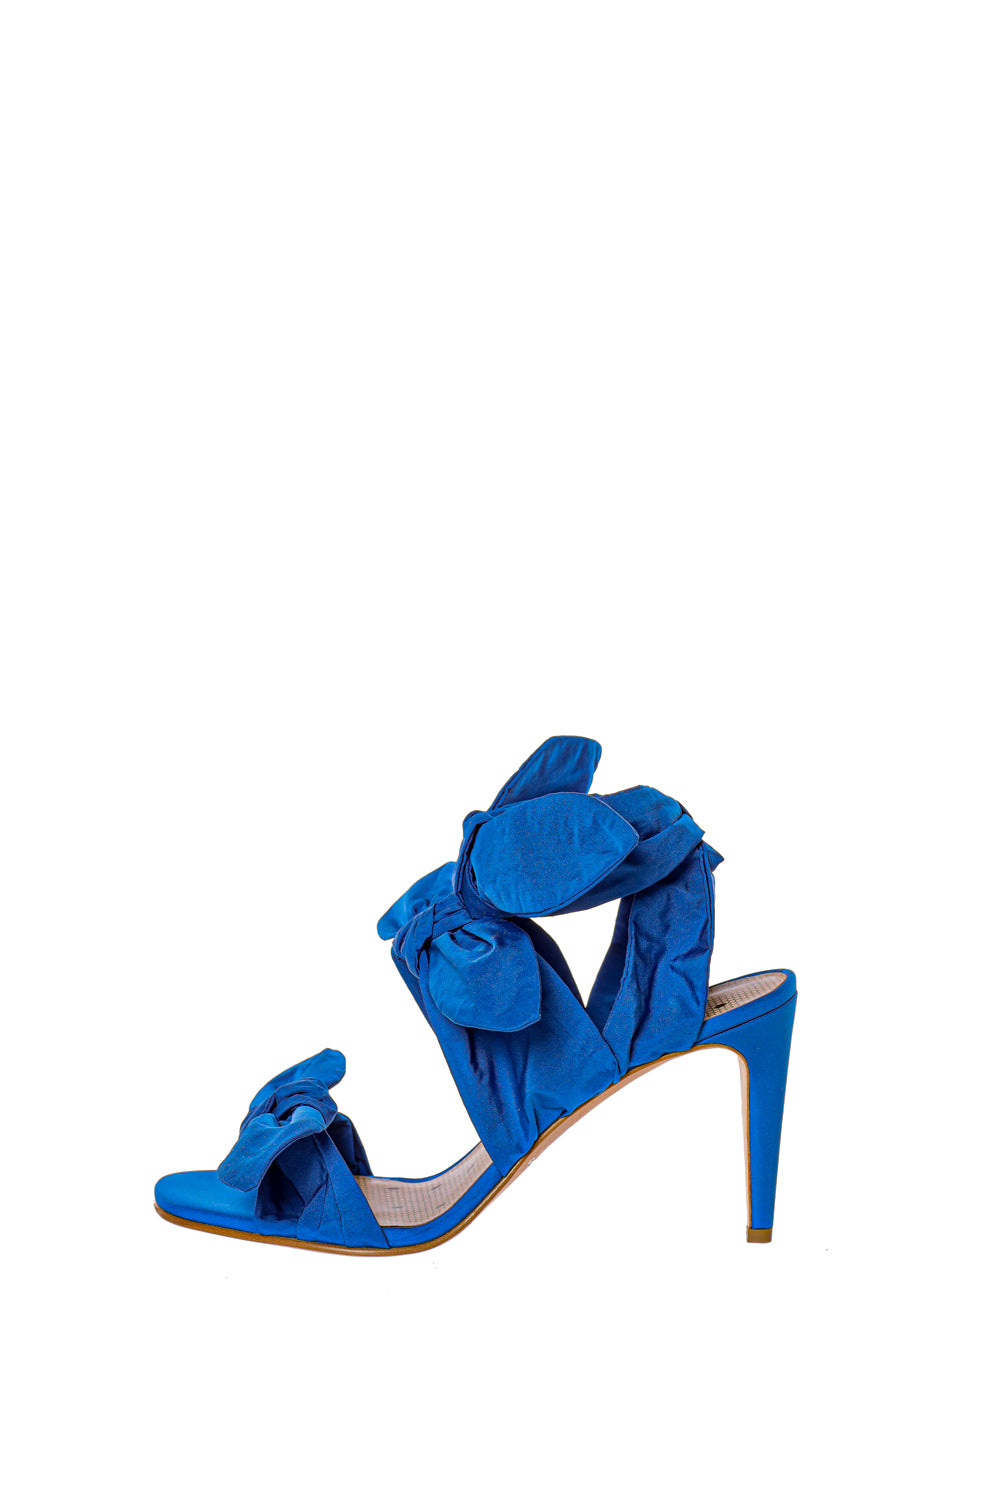 sandale albastre